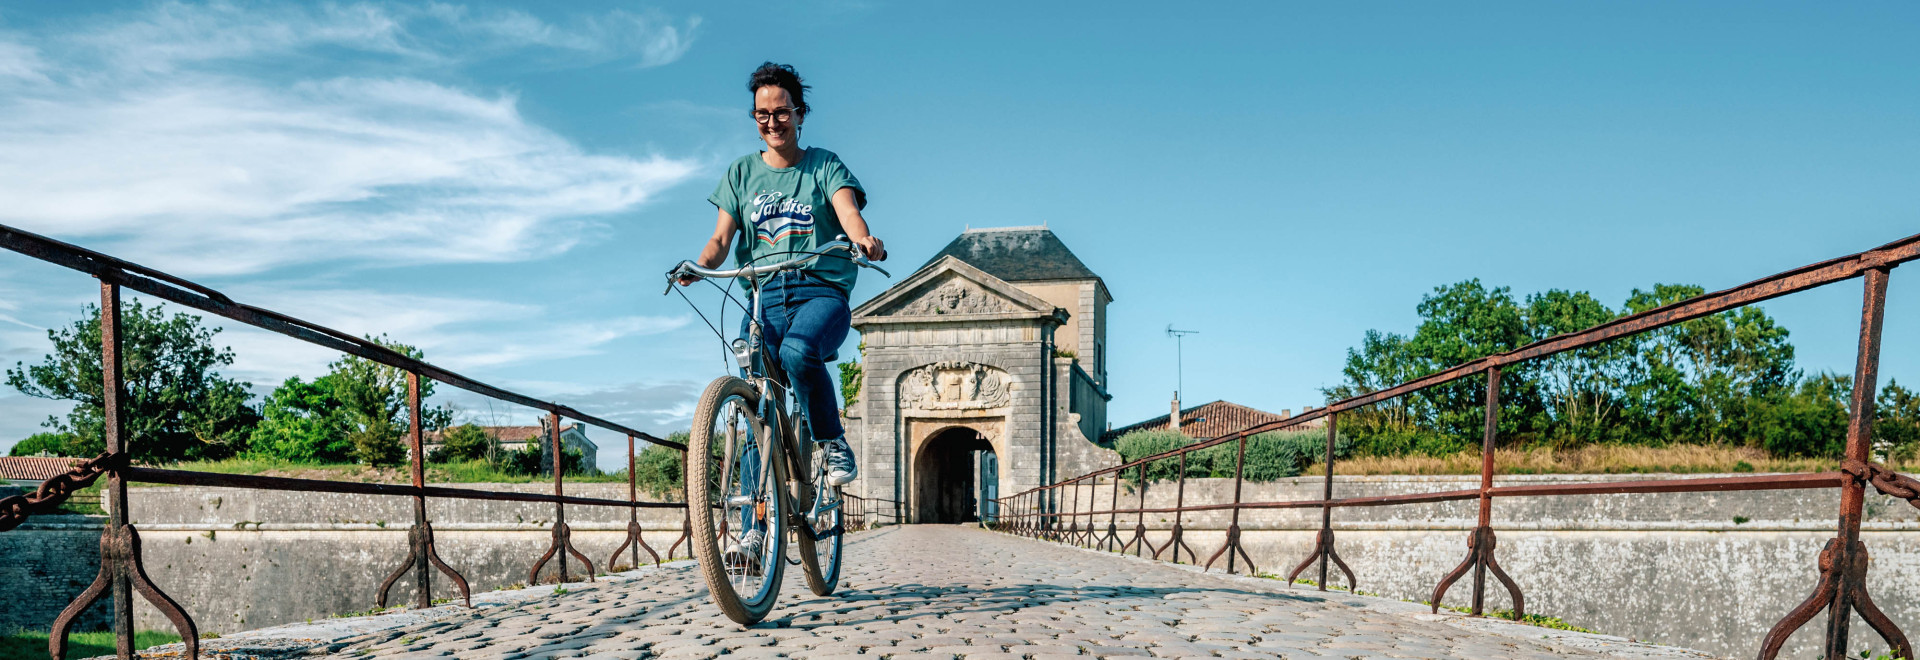 Ontdekking per fiets: slenter door de straten van Saint-Martin-de-Ré